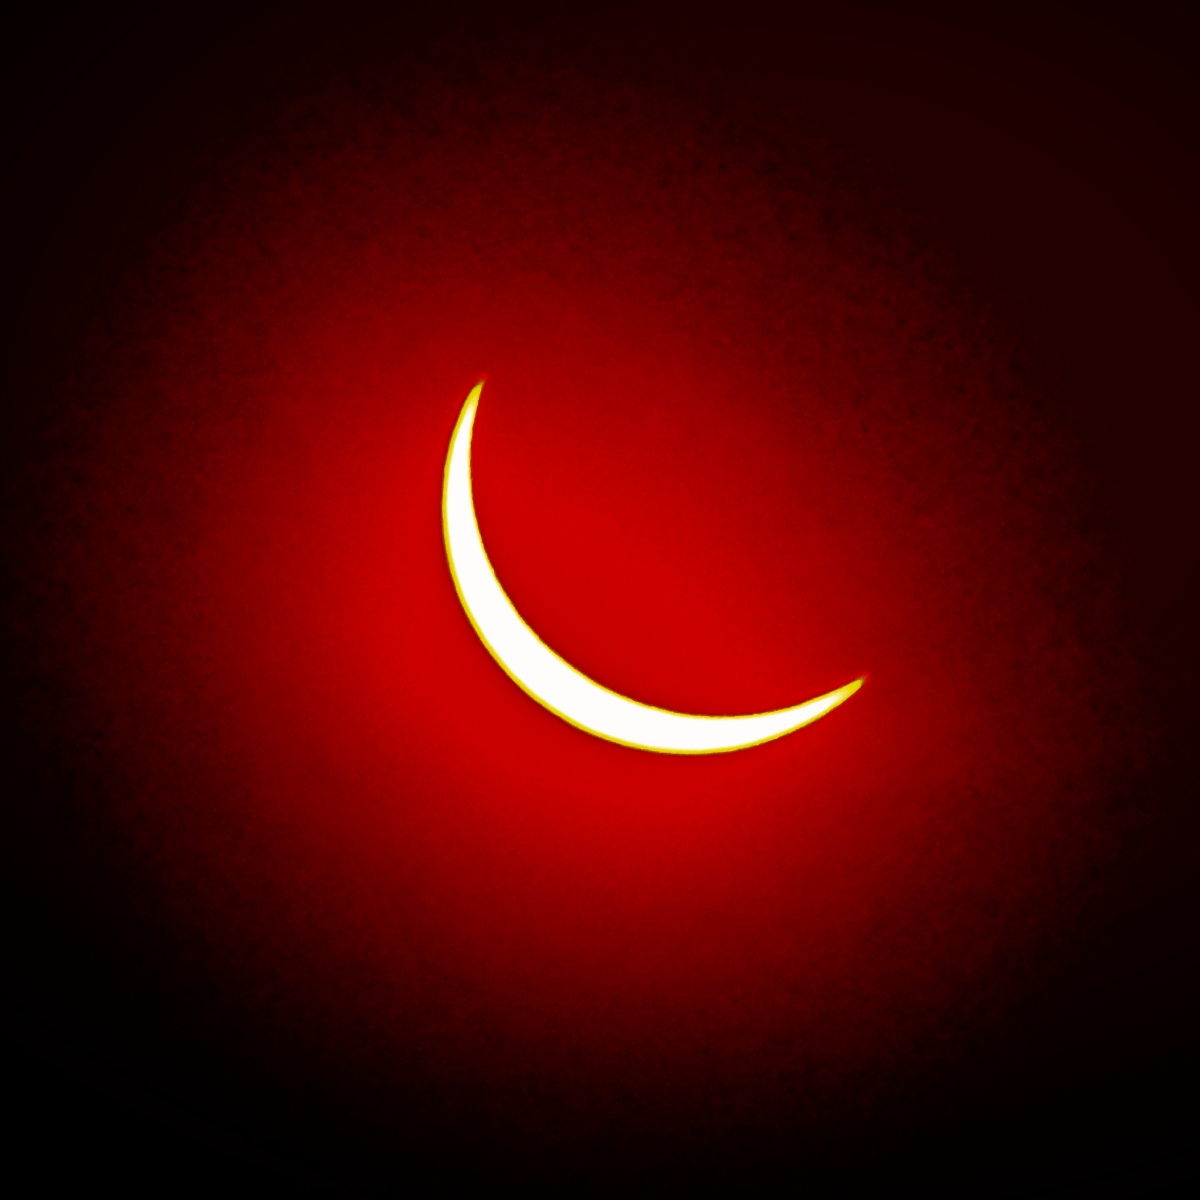 La ltima foto del eclipse, que bueno dicen todos jajajajajaj